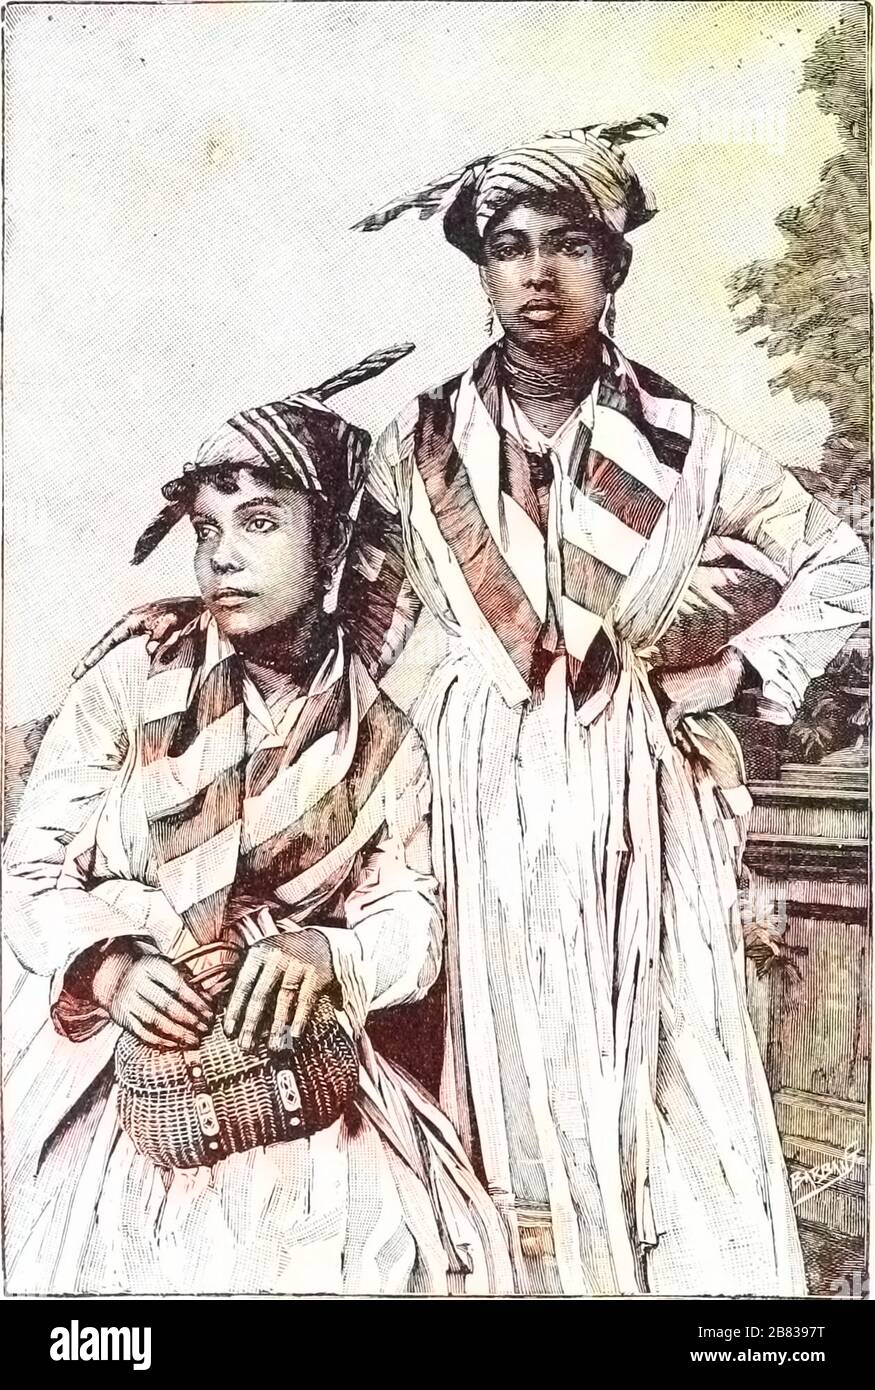 Dessin gravé de deux jeunes femmes de Guyane, du livre "l'histoire universelle de Ridpath" de John Clark Ridpath, 1897. Archives Internet de courtoisie. Remarque : l'image a été colorisée numériquement à l'aide d'un processus moderne. Les couleurs peuvent ne pas être précises sur une période donnée. () Banque D'Images